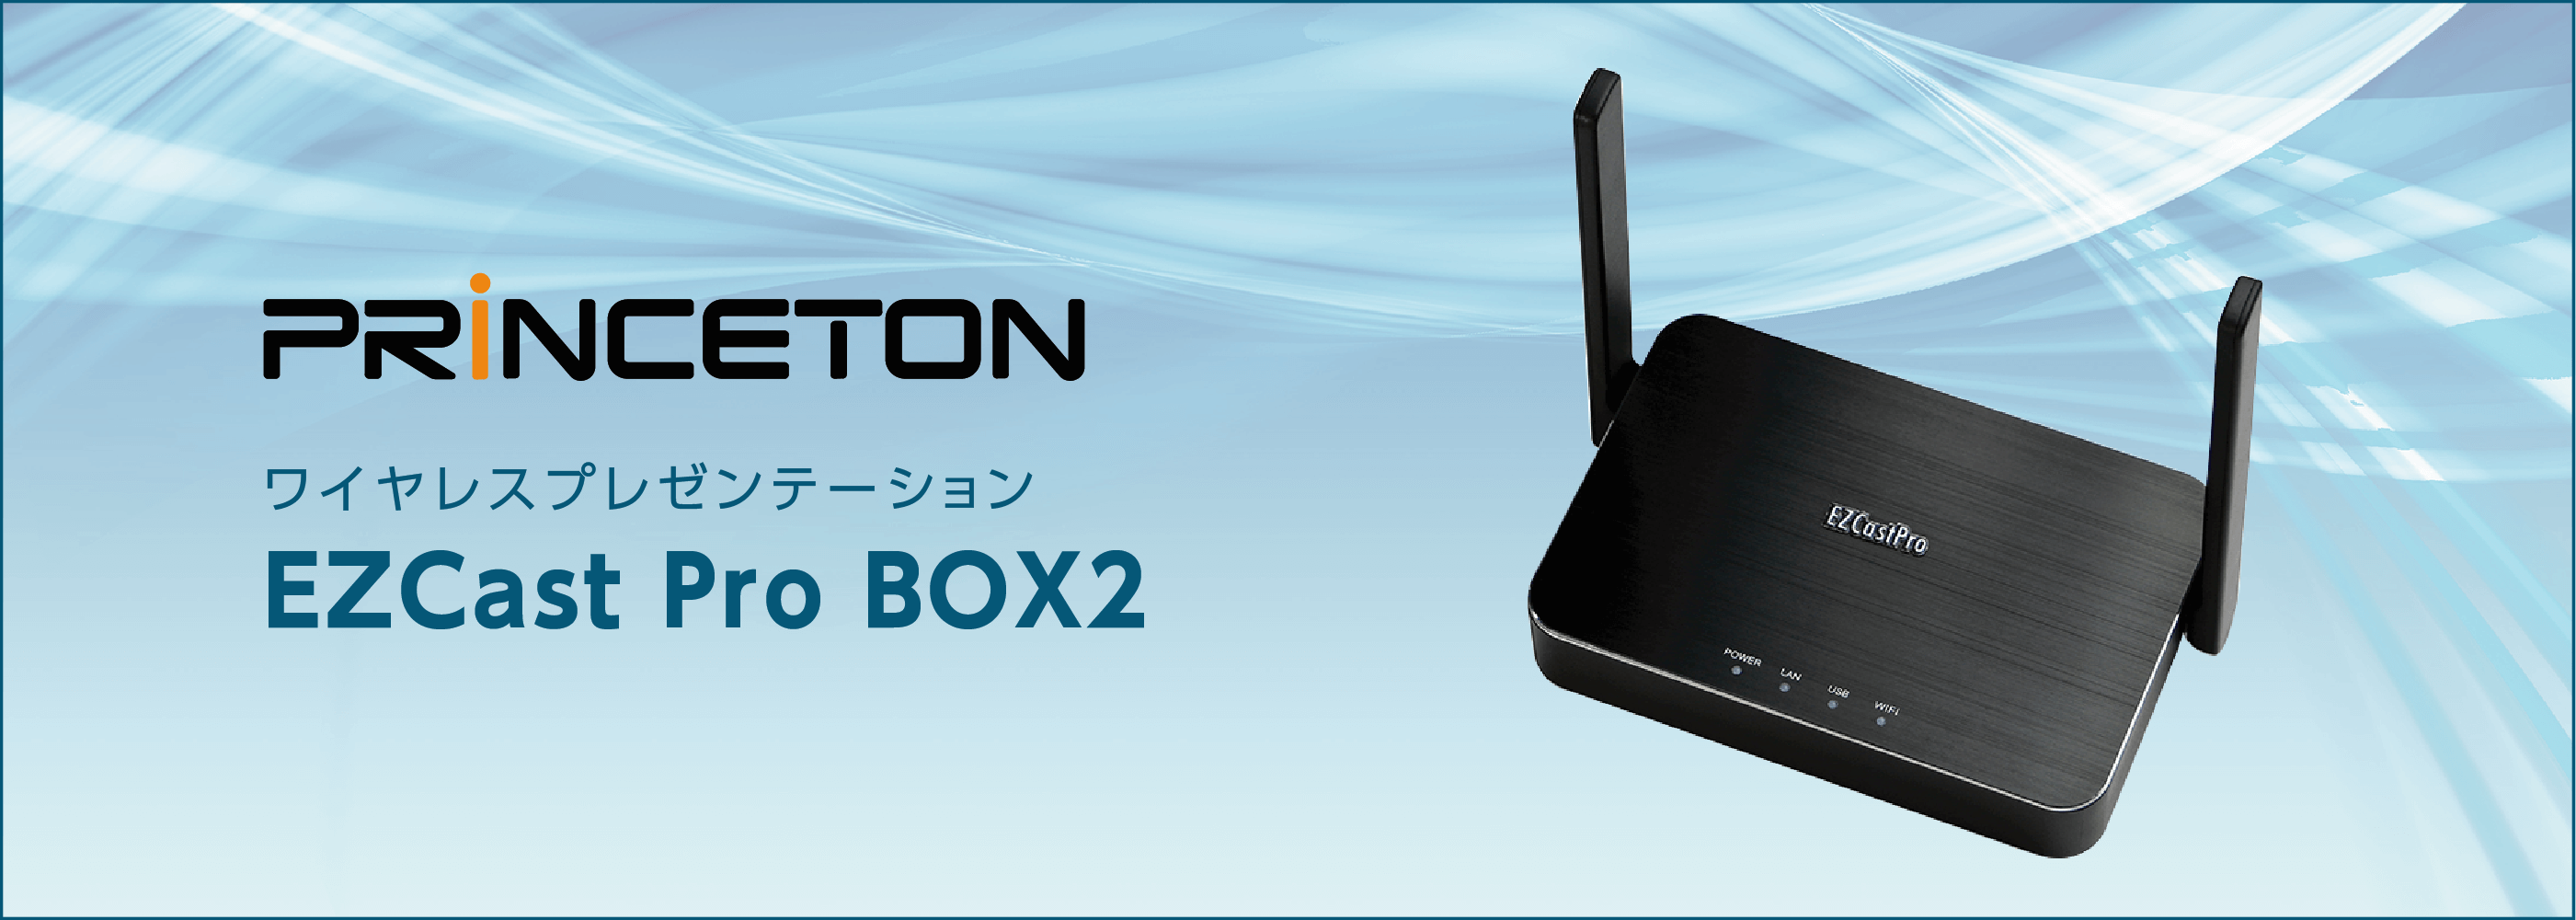 プリンストン ワイヤレスプレゼンテーション EZCast Pro BOX2 EZPRO-BOX2-B10N